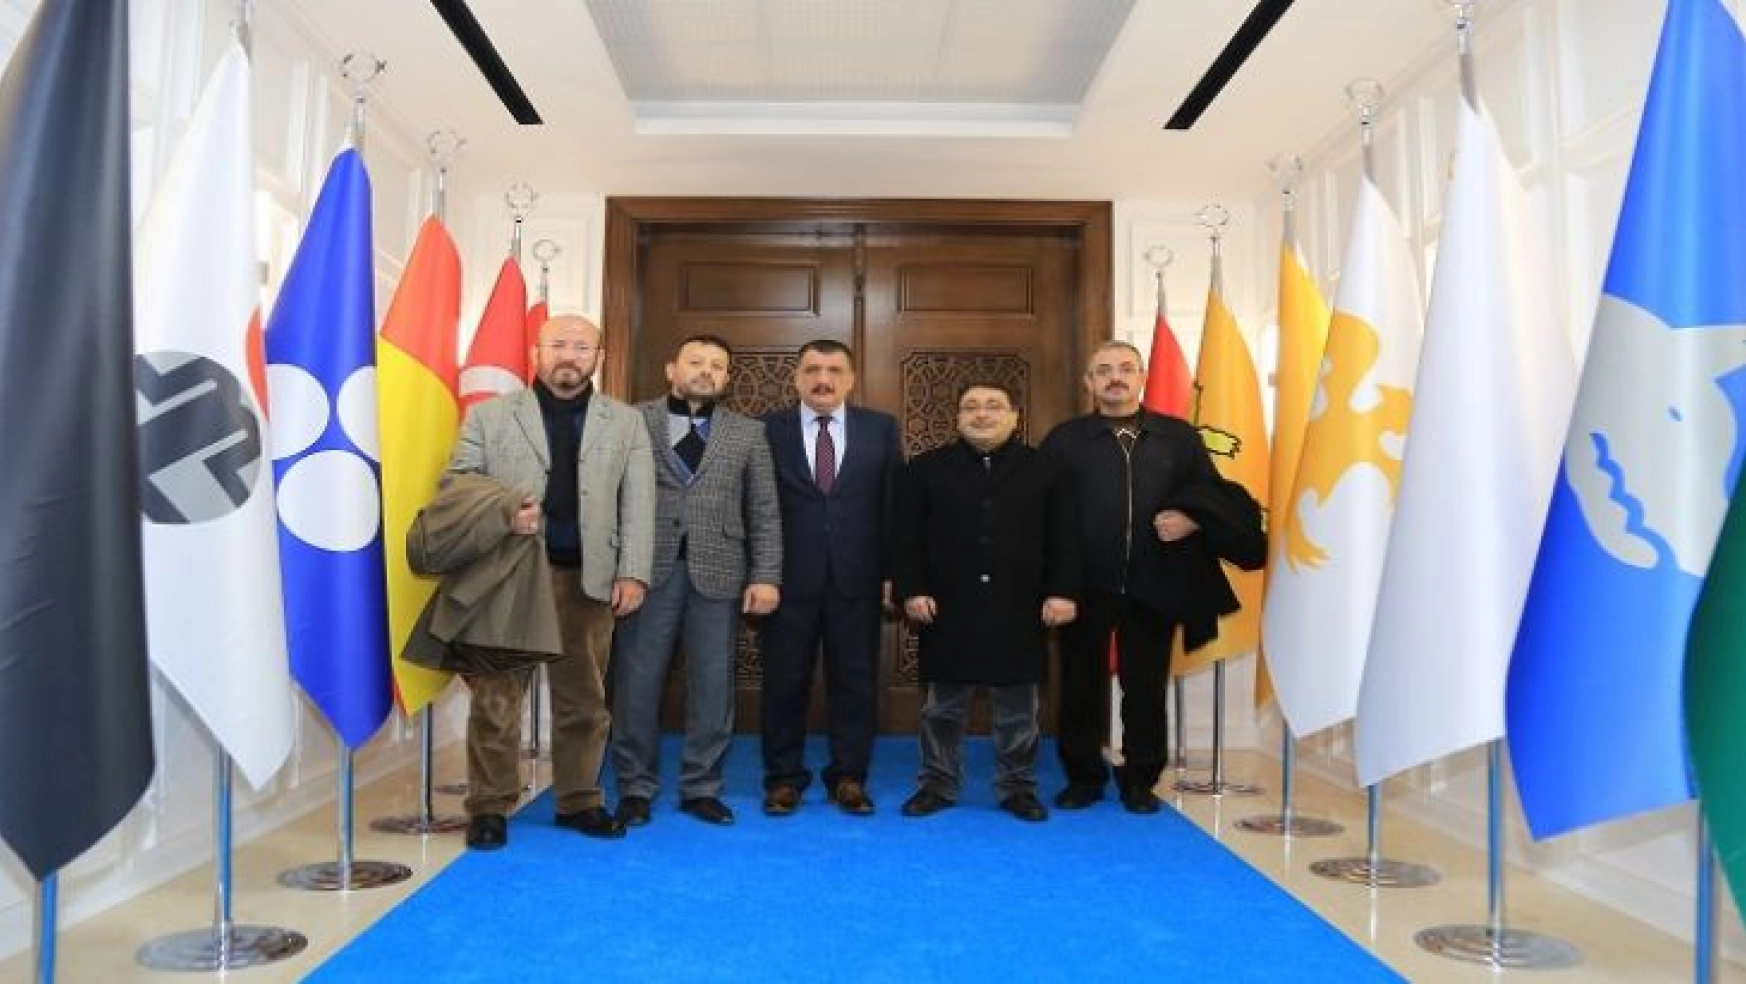 Yeşilay Cemiyeti Malatya Şube Yöneticileri, Başkan Gürkan'ı Ziyaret Etti